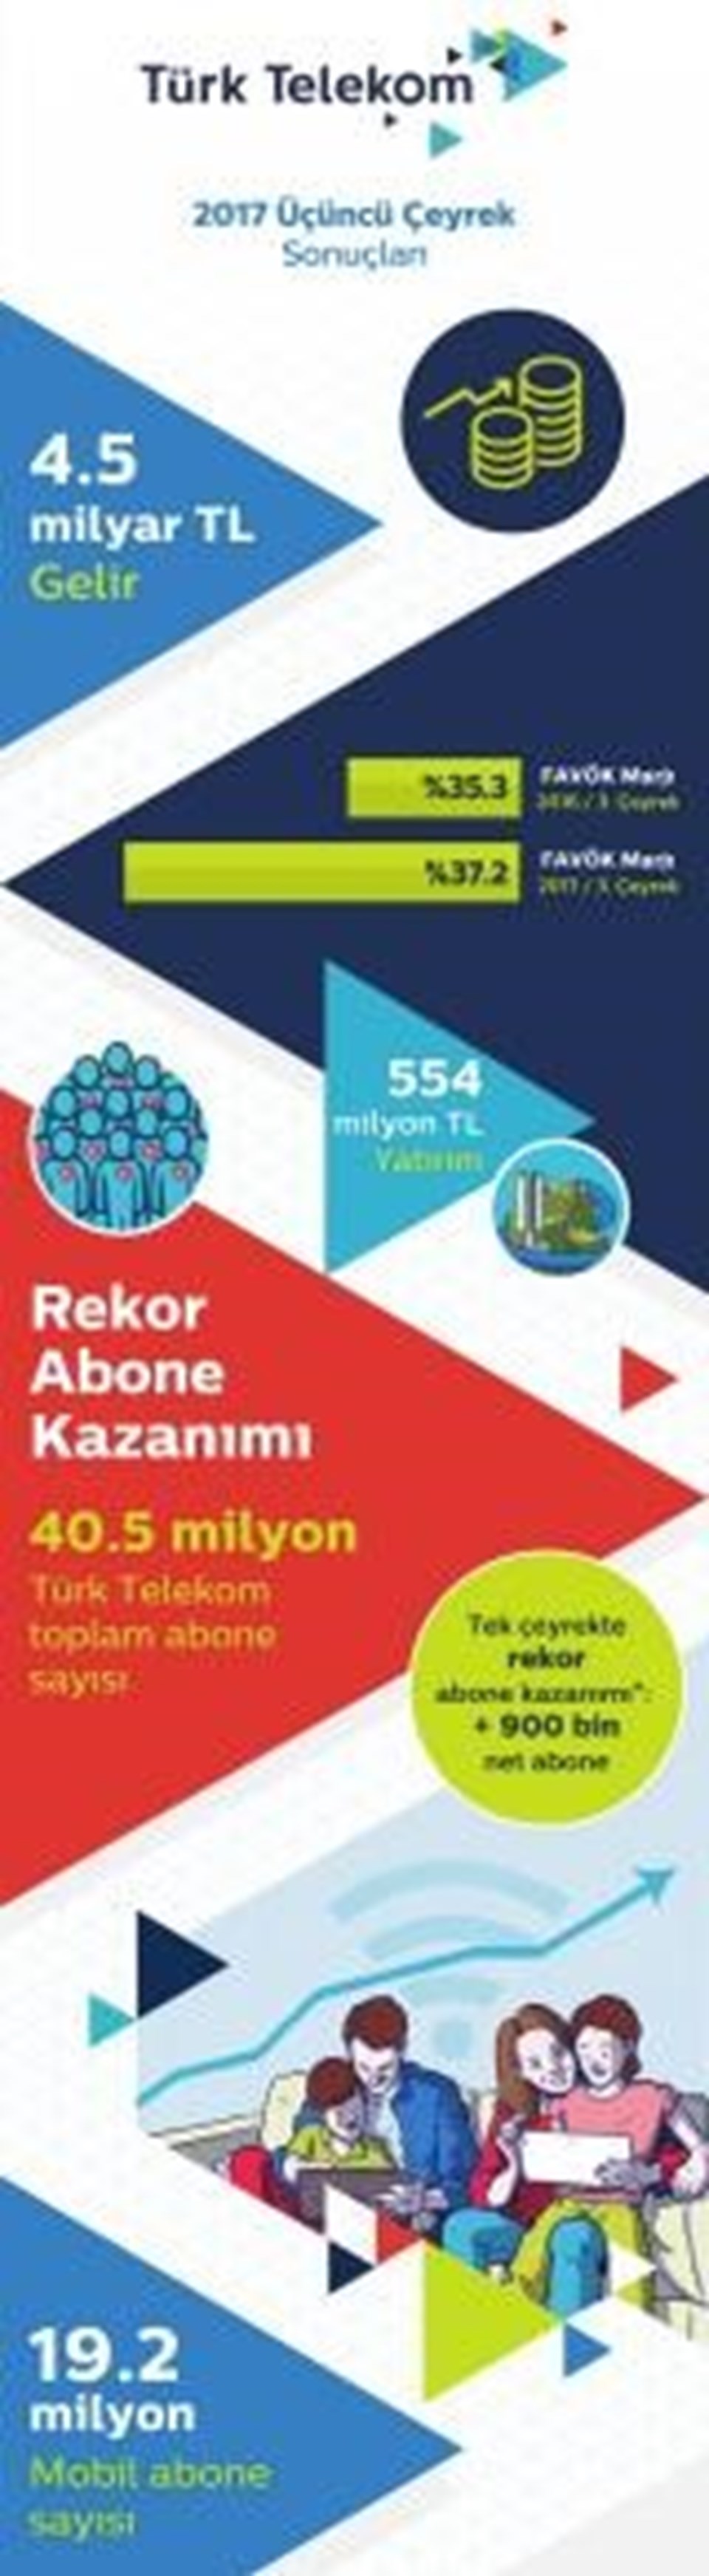 Türk Telekom 40,5 milyon aboneye ulaştı (Türkiye nüfusunun yarısı) - 2